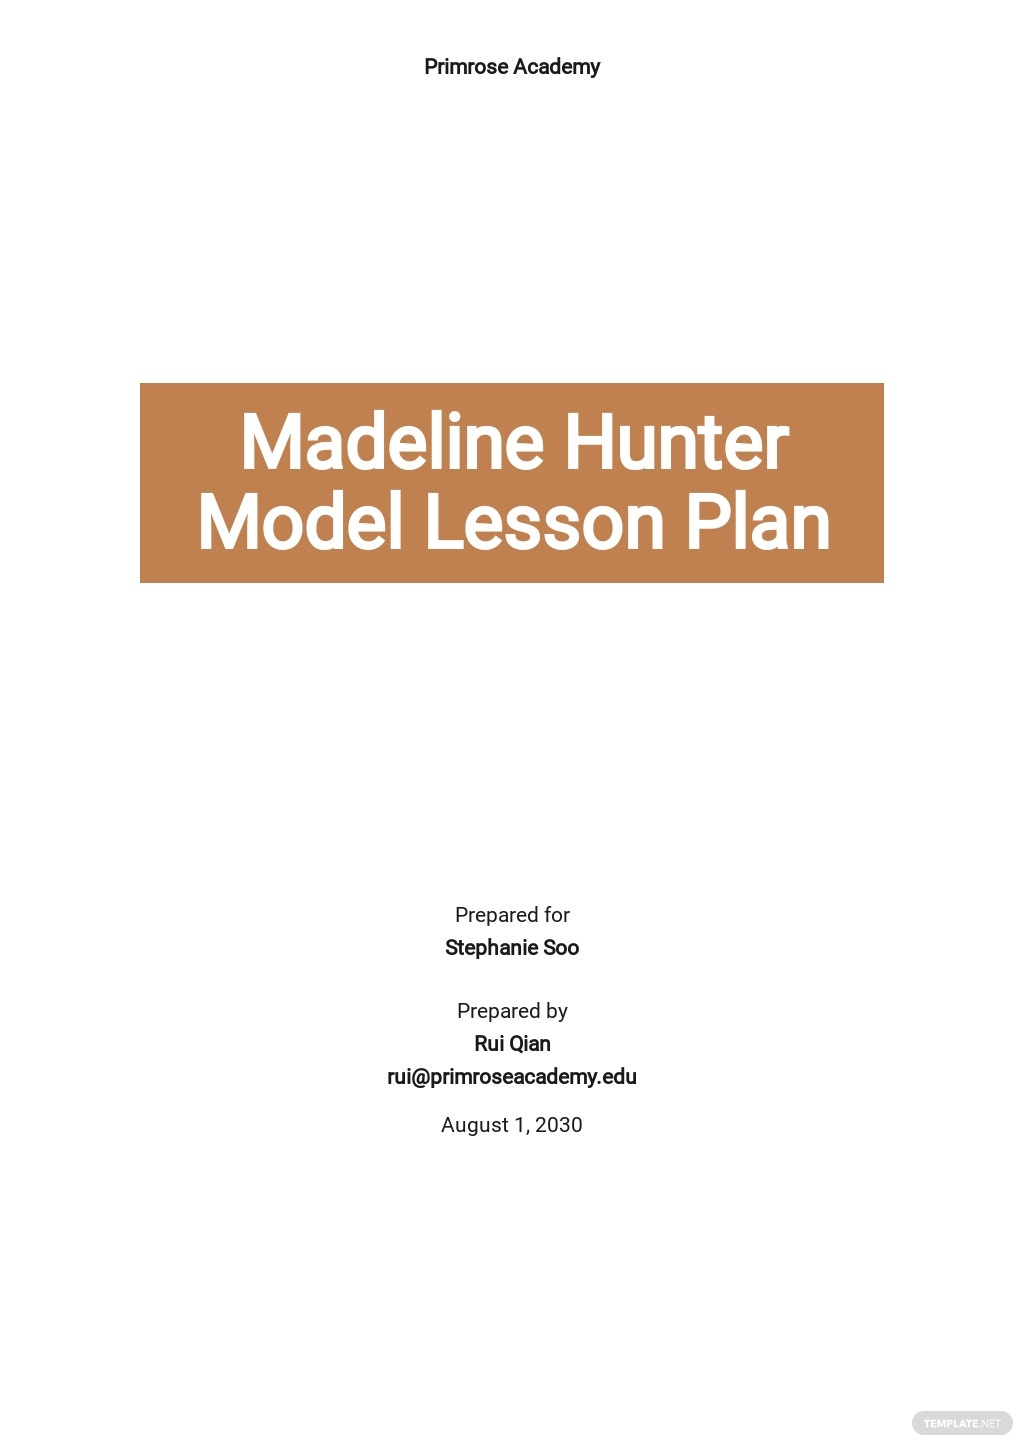 Madeline Hunter Model Lesson Plan Template - Google Docs, Word  With Madeline Hunter Lesson Plan Template Blank